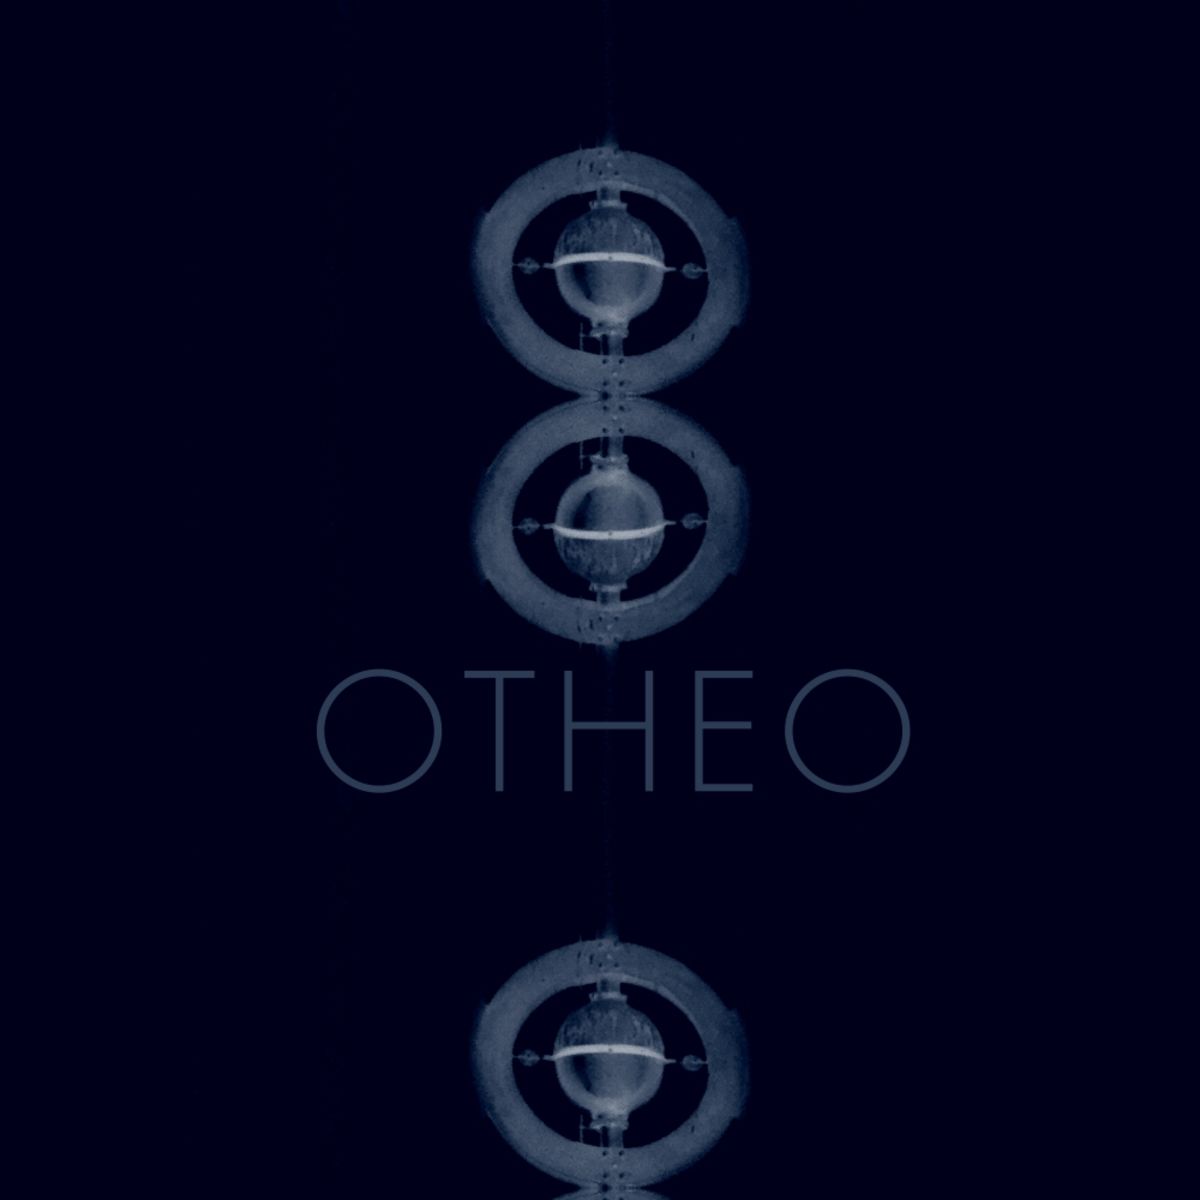 Otheo - Technotheo, Vol. 1 / Nein Records